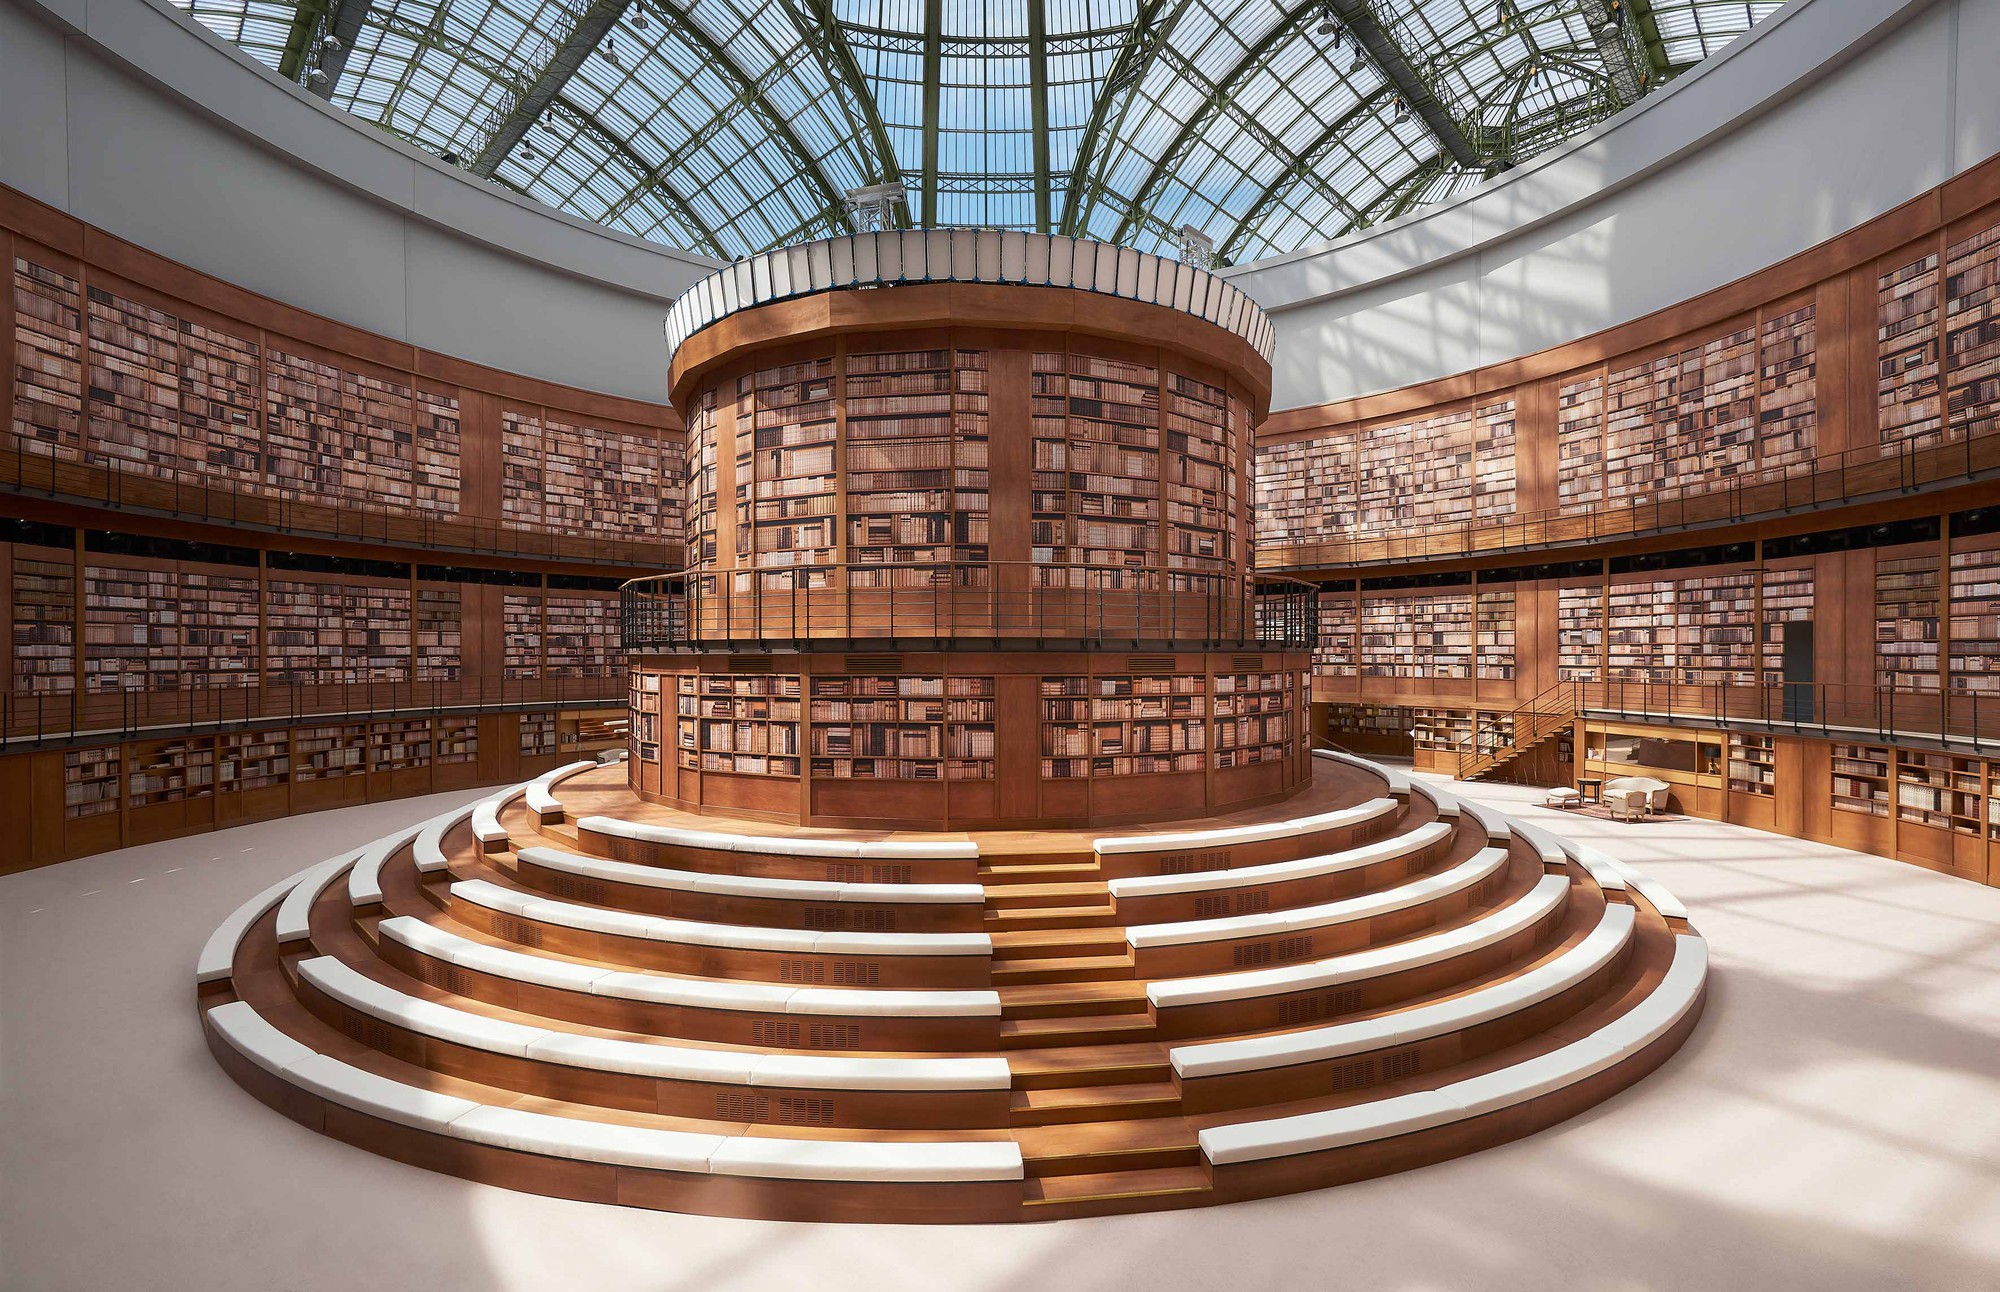 Lên đồ kiểu tomboyloichoi, Châu Tấn chẳng ngán bị lọt thỏm giữa thư viện khổng lồ của Chanel - Ảnh 2.